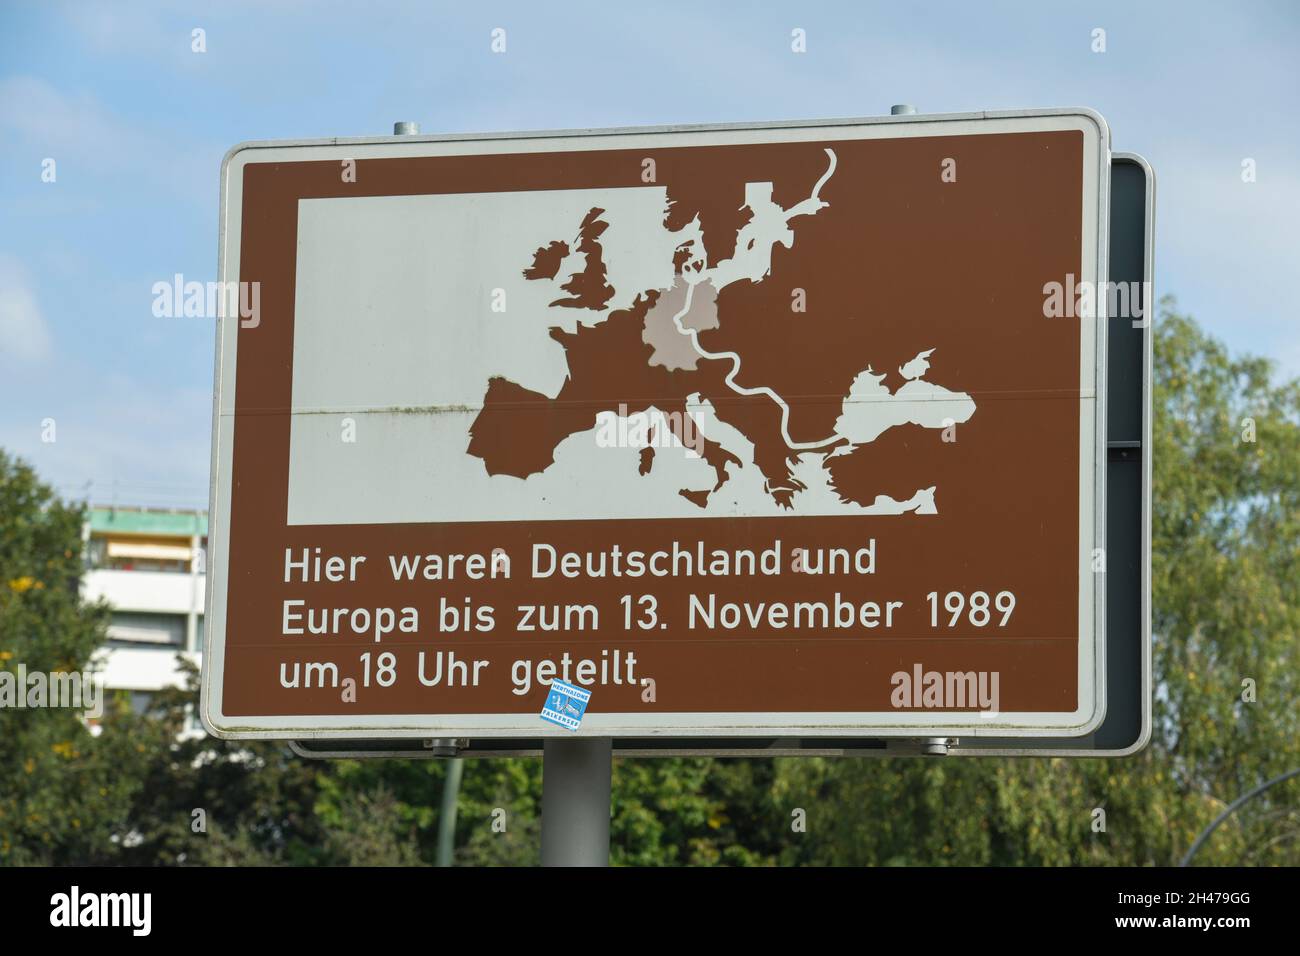 Grenzschild, Erinnerung, Berliner Mauer, Deutsche Teilung, Spandau, Berlin, Deutschland Stock Photo